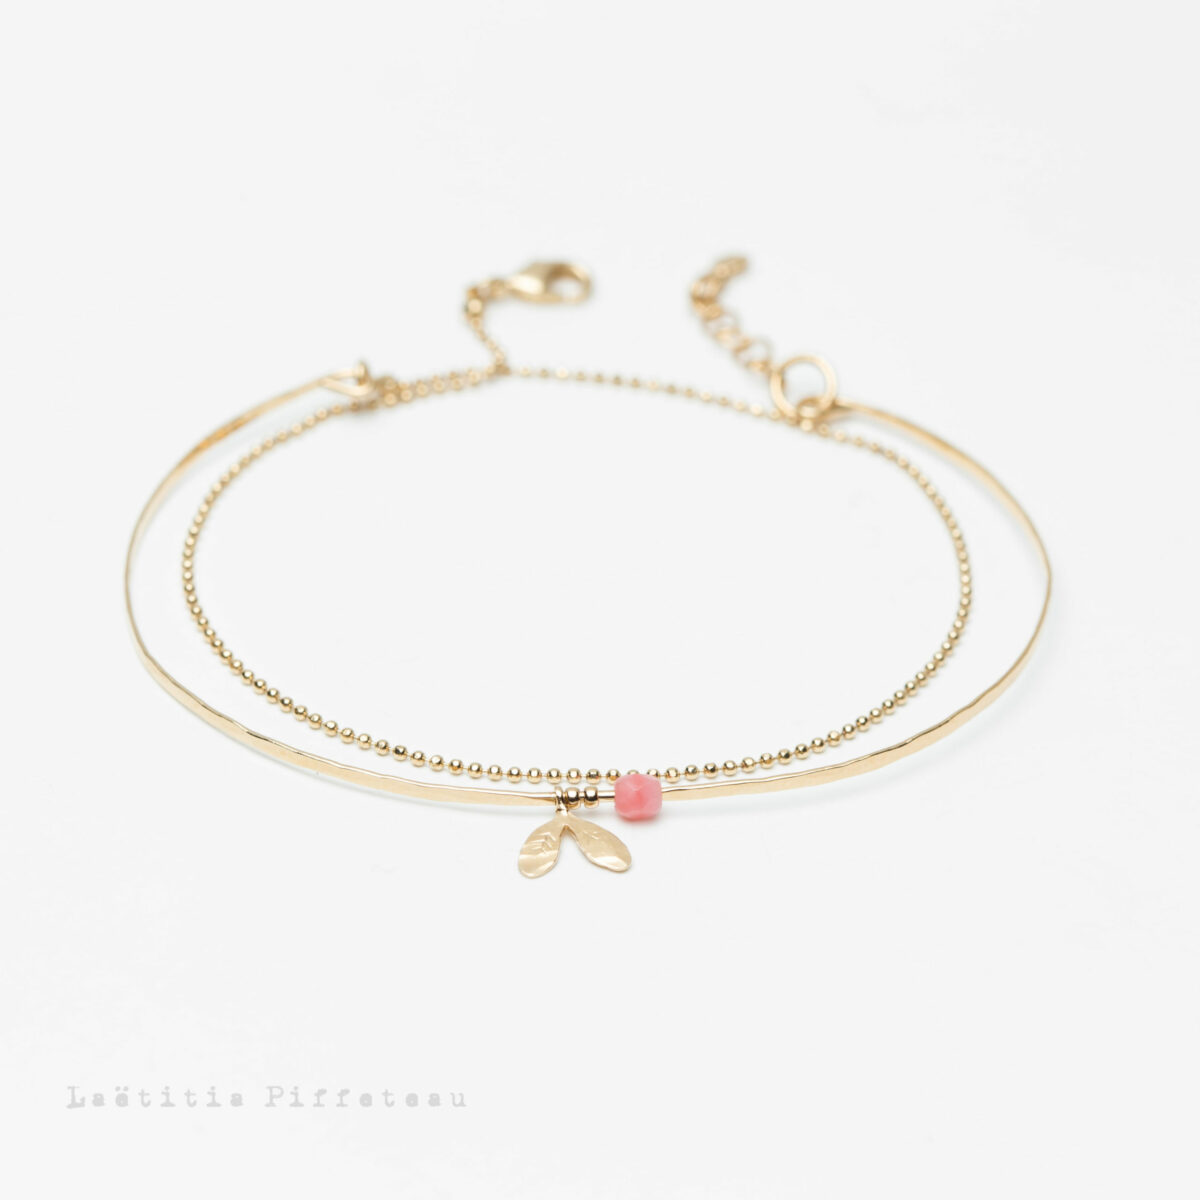 Bracelet Lilas Rose - bracelet double Jonc martelé et chaine or Laëtitia Piffeteau